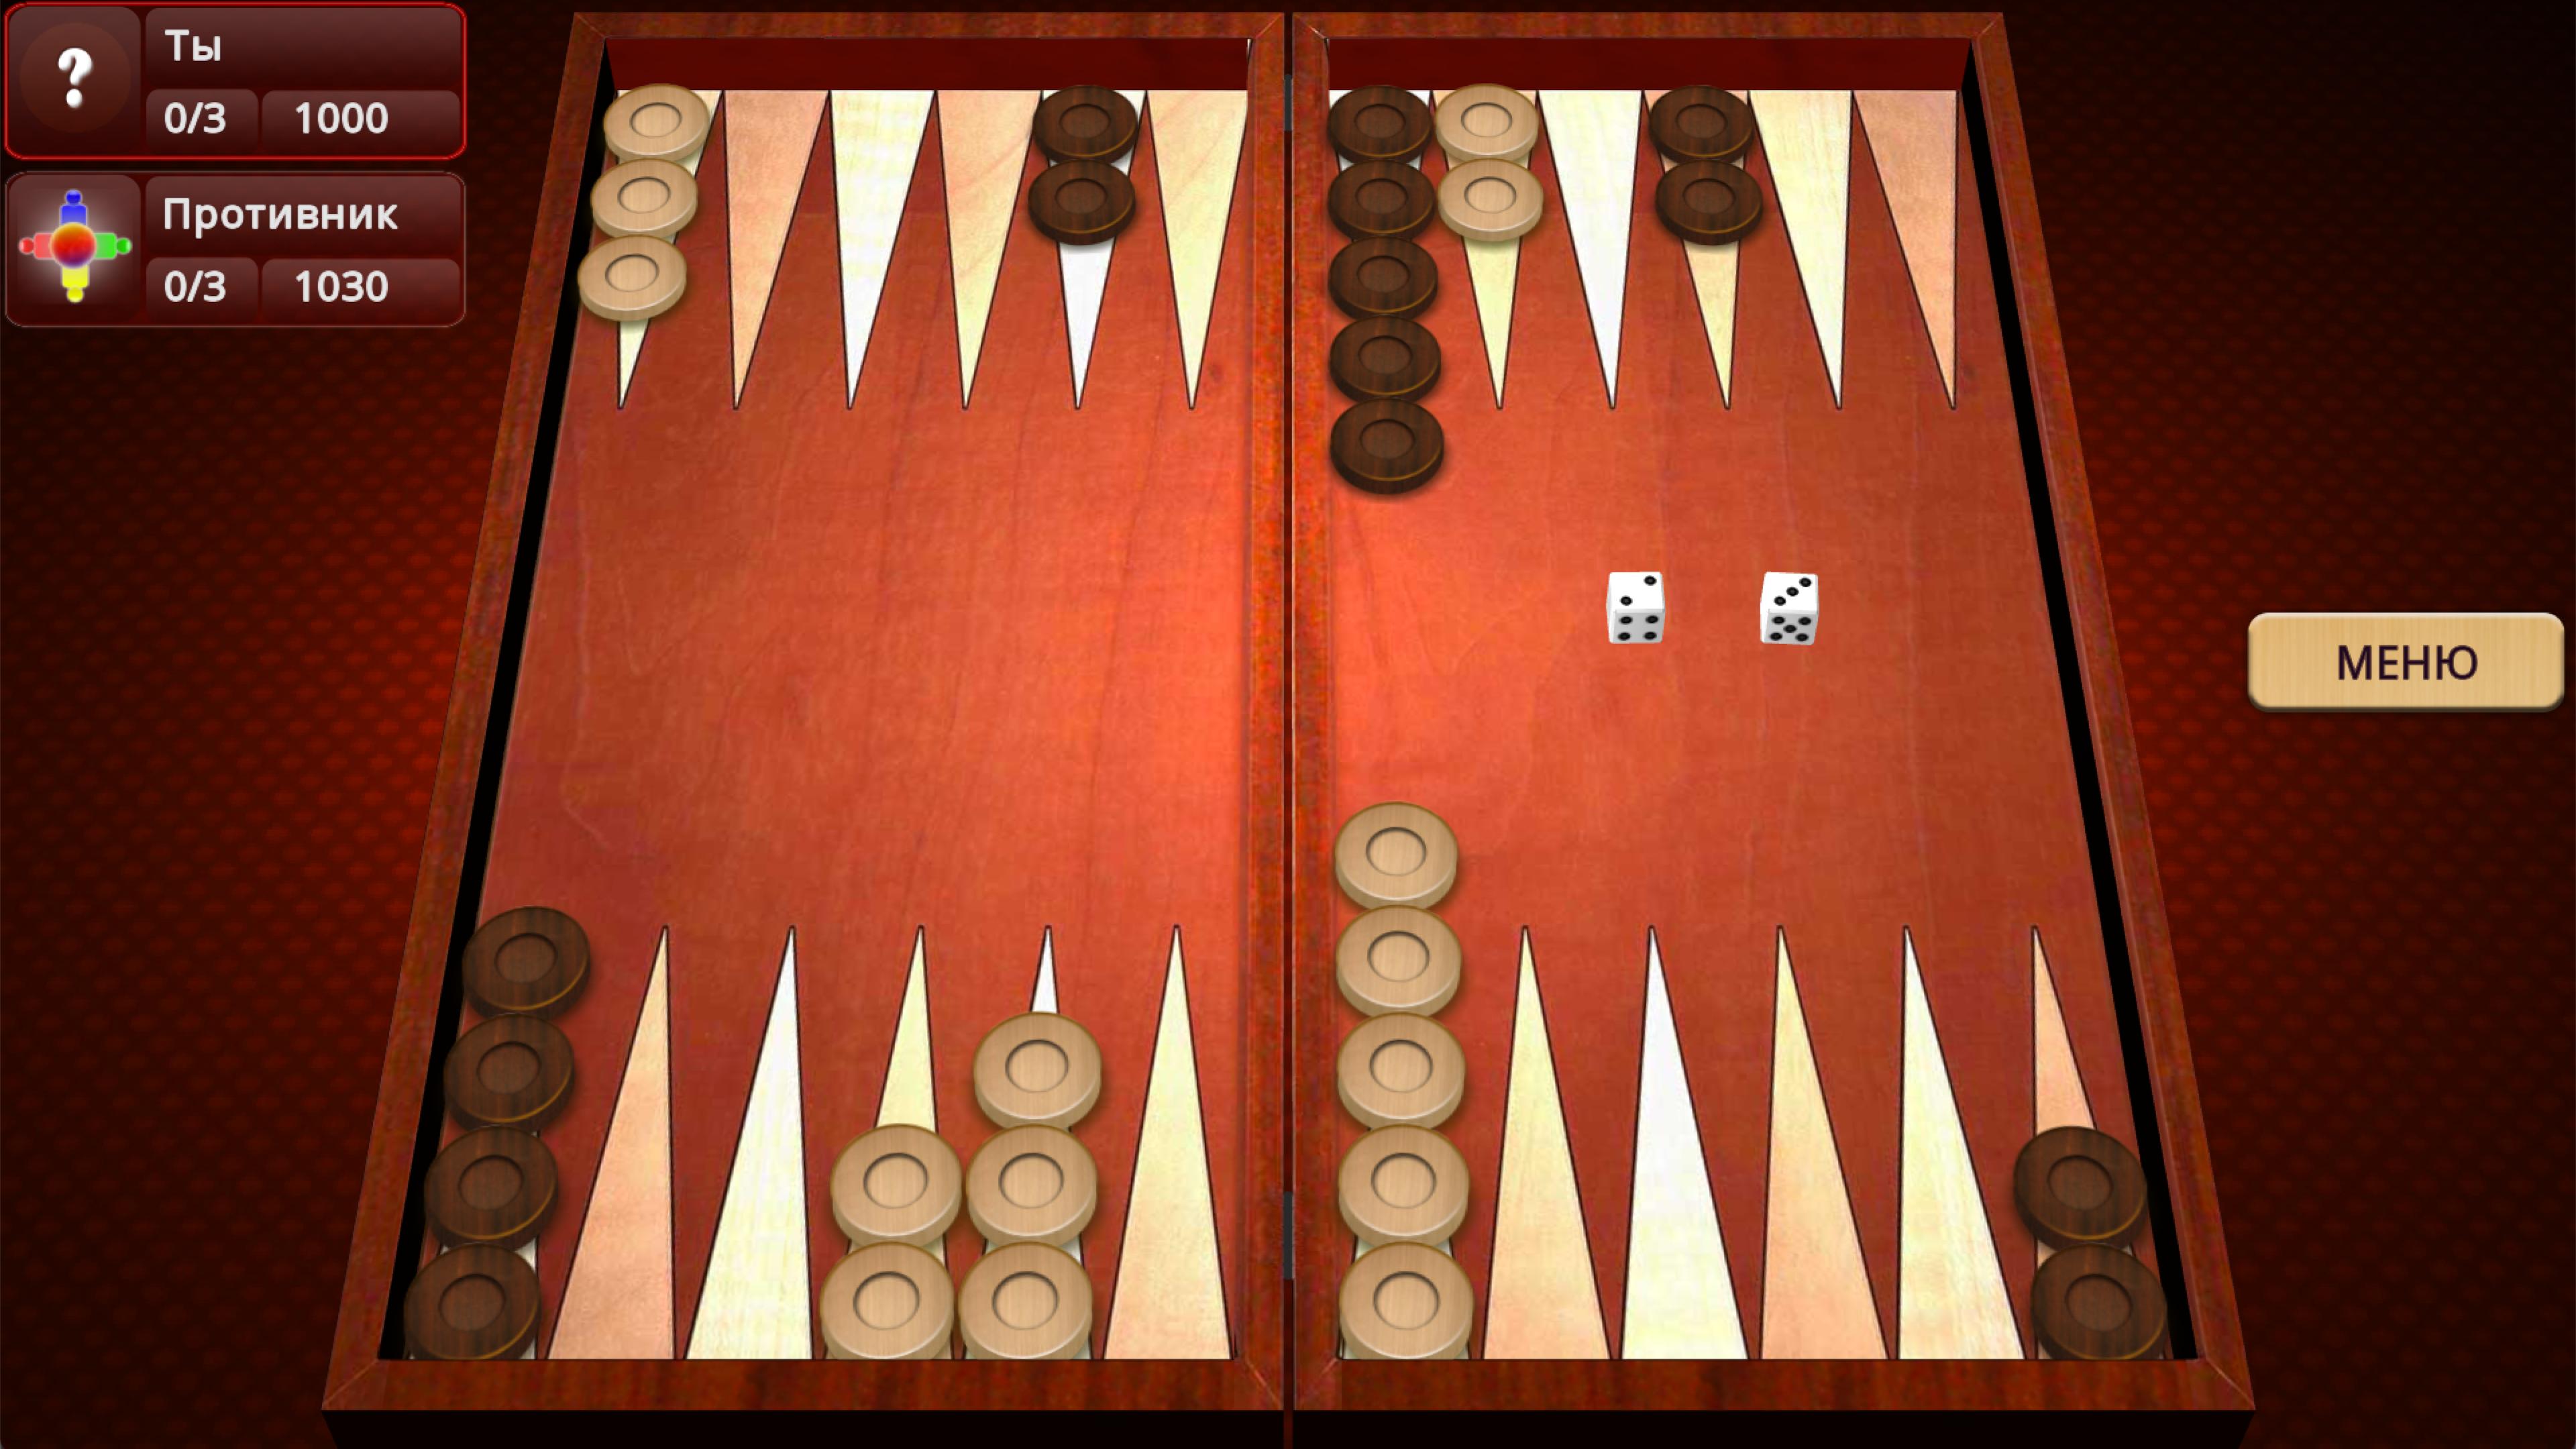 Нарды короткие длинная игра. Backgammon короткие нарды. Нарды бэкгаммон короткие. Короткие нарды расстановка фото. Умные нарды короткие.